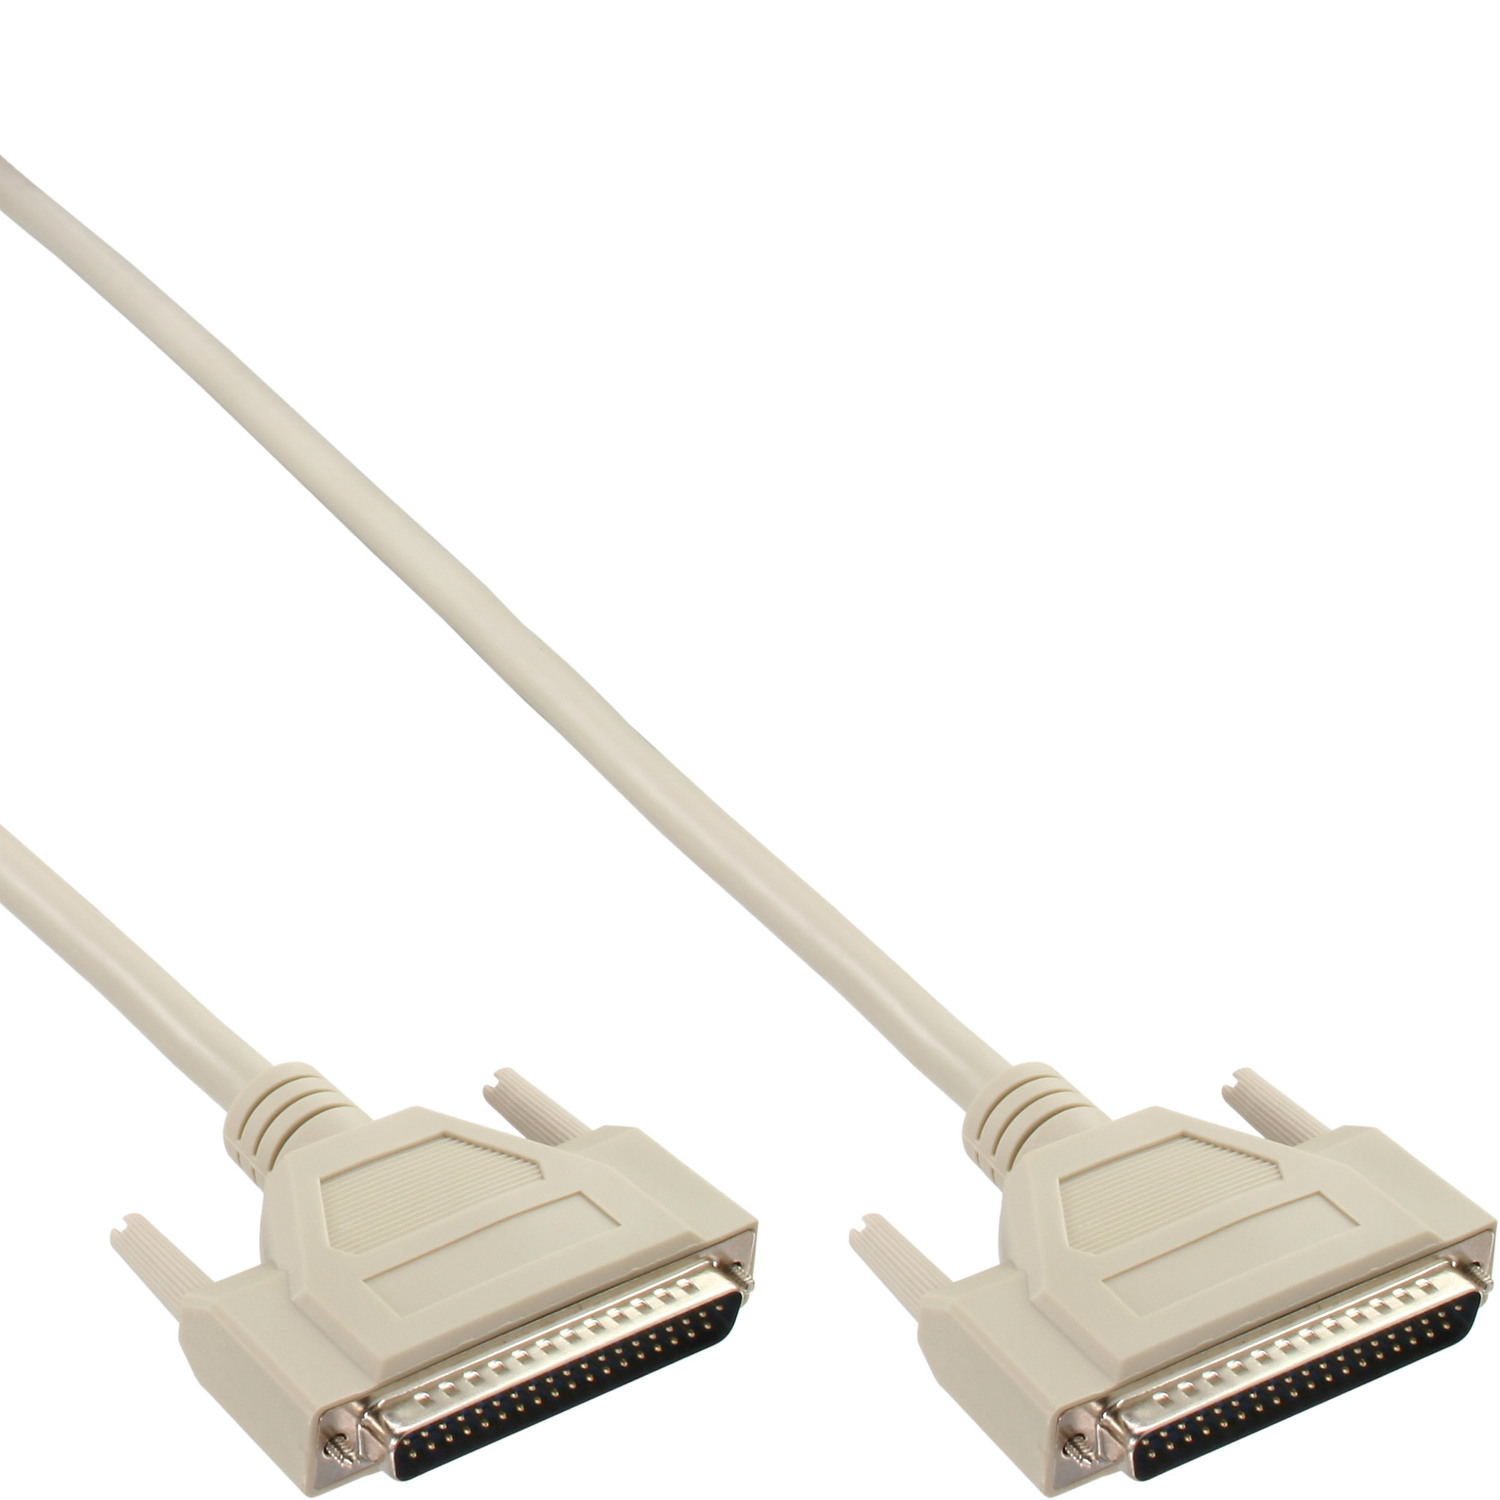 INLINE InLine® Serielles Kabel, / beige / Seriell 37pol 5m Stecker vergossen, / 1:1 Stecker, Parallel